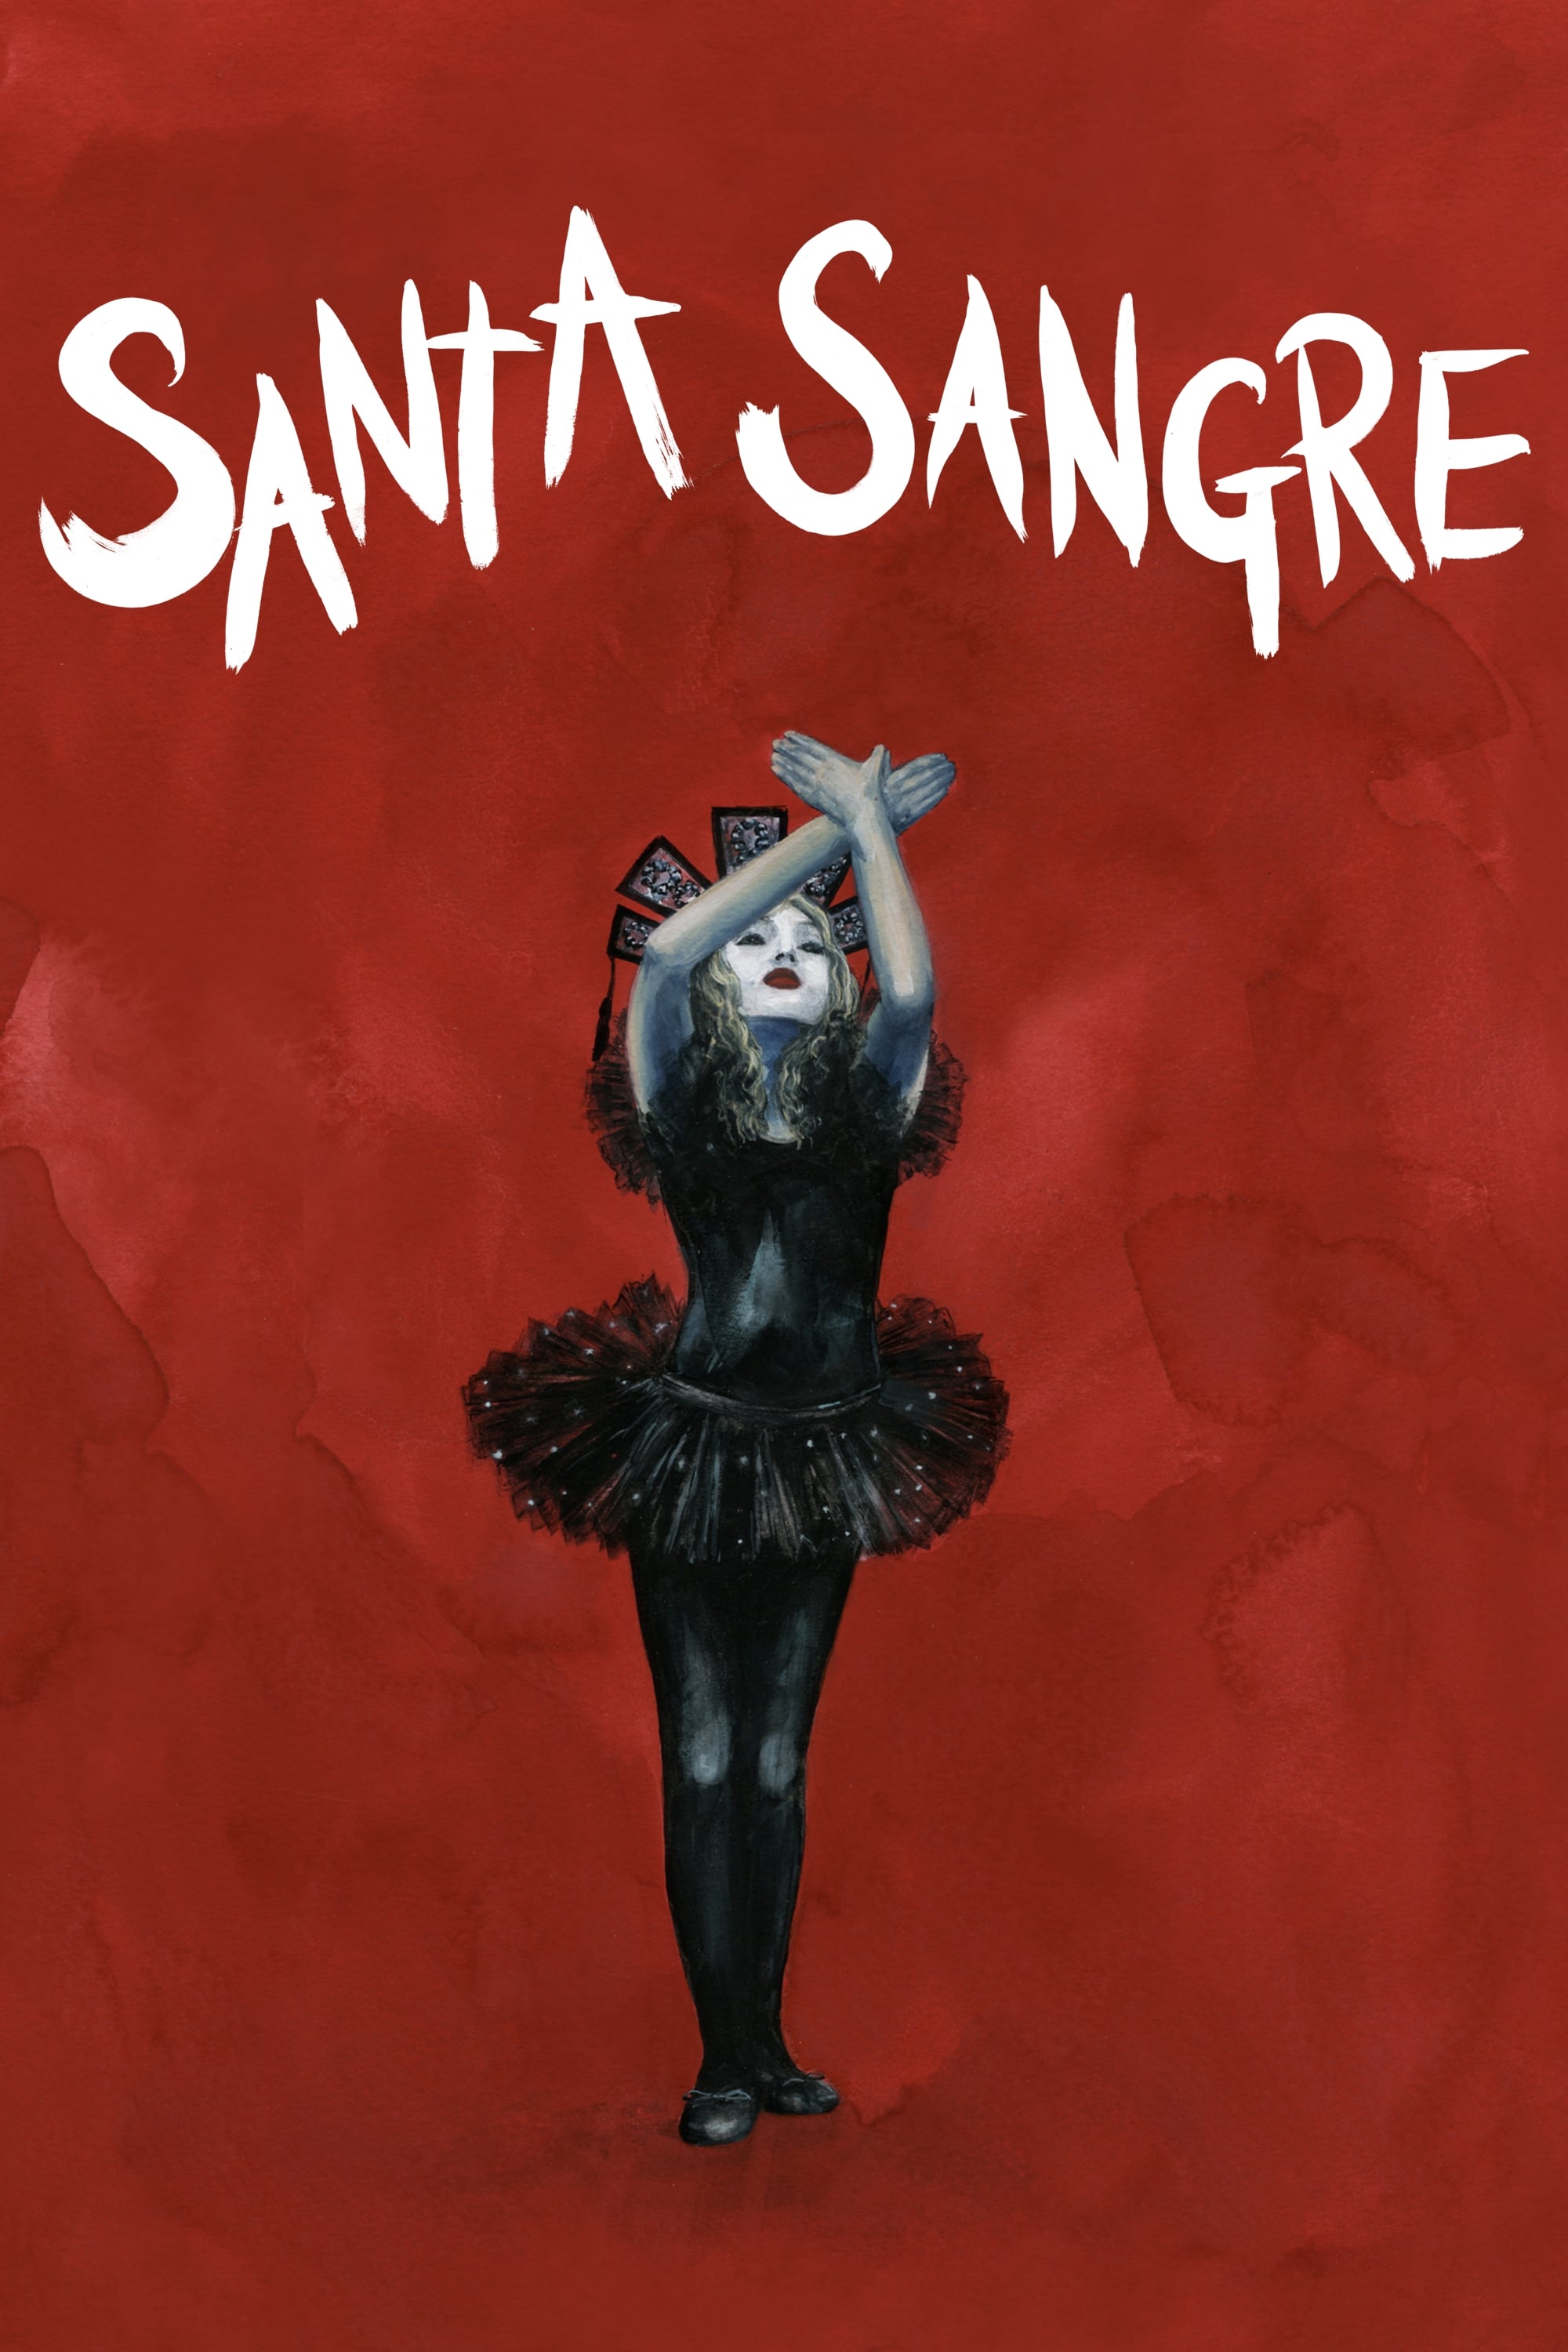 Santa Sangre (1989)